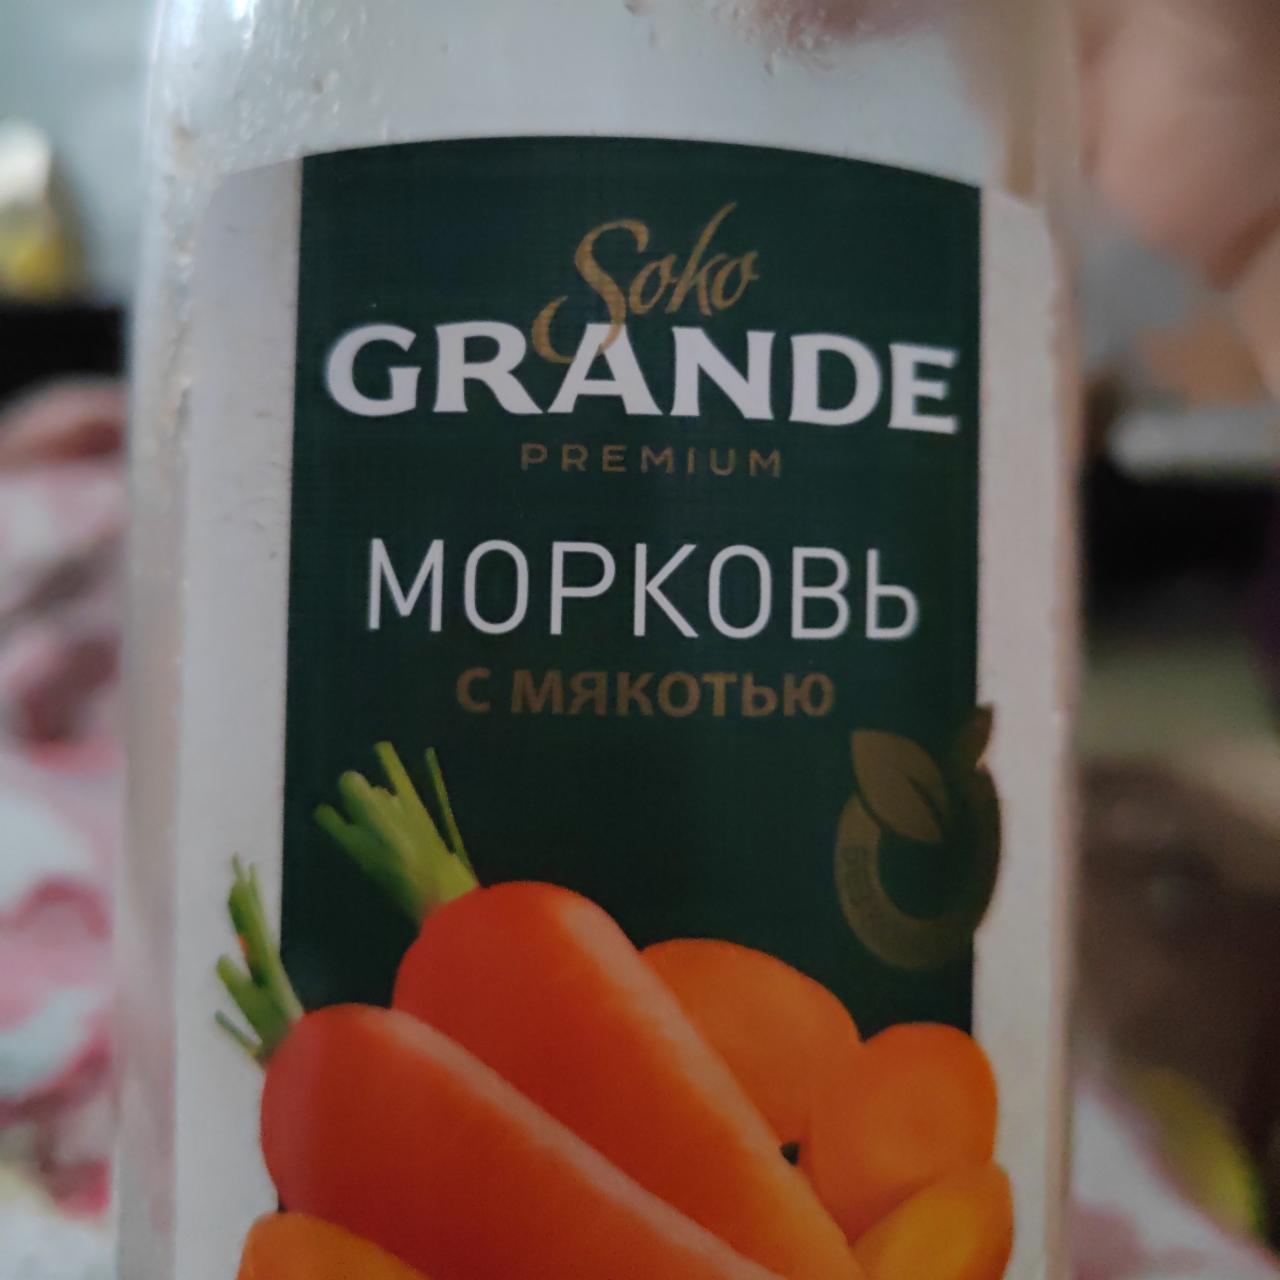 Фото - Нектар морковный с мякотью Soko Grande